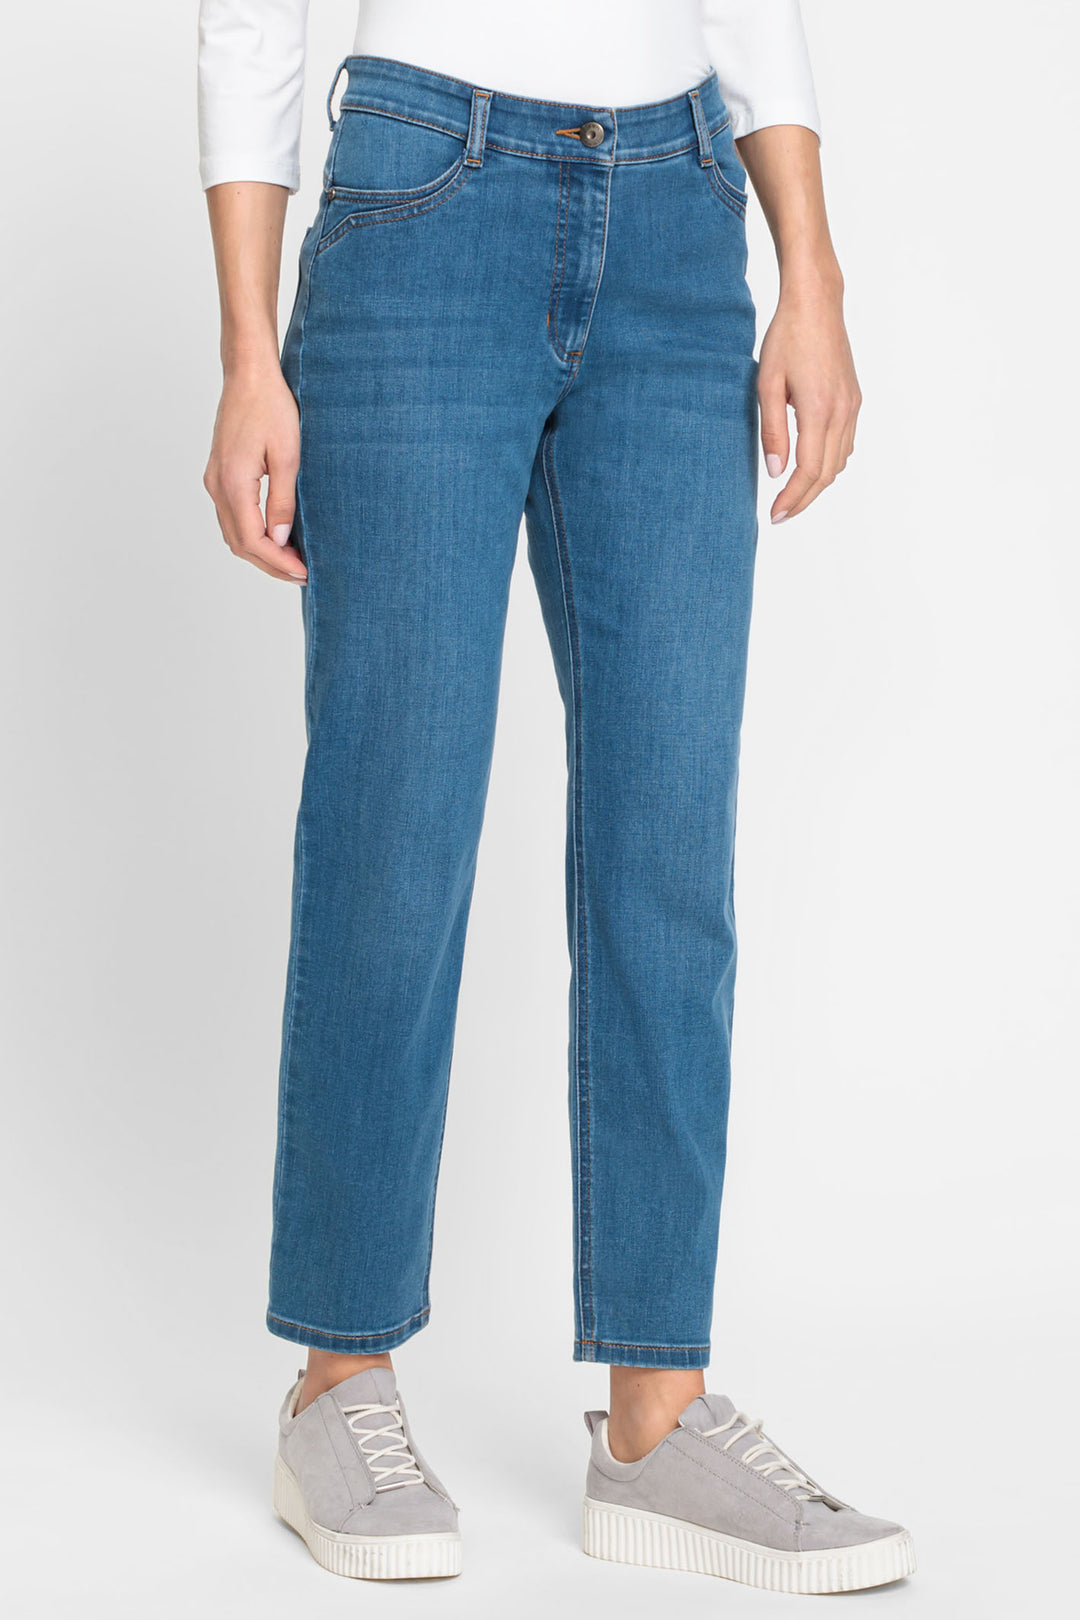 Olsen 14002170 Blue Denim Ankle Grazer Jeans - Experience Boutique